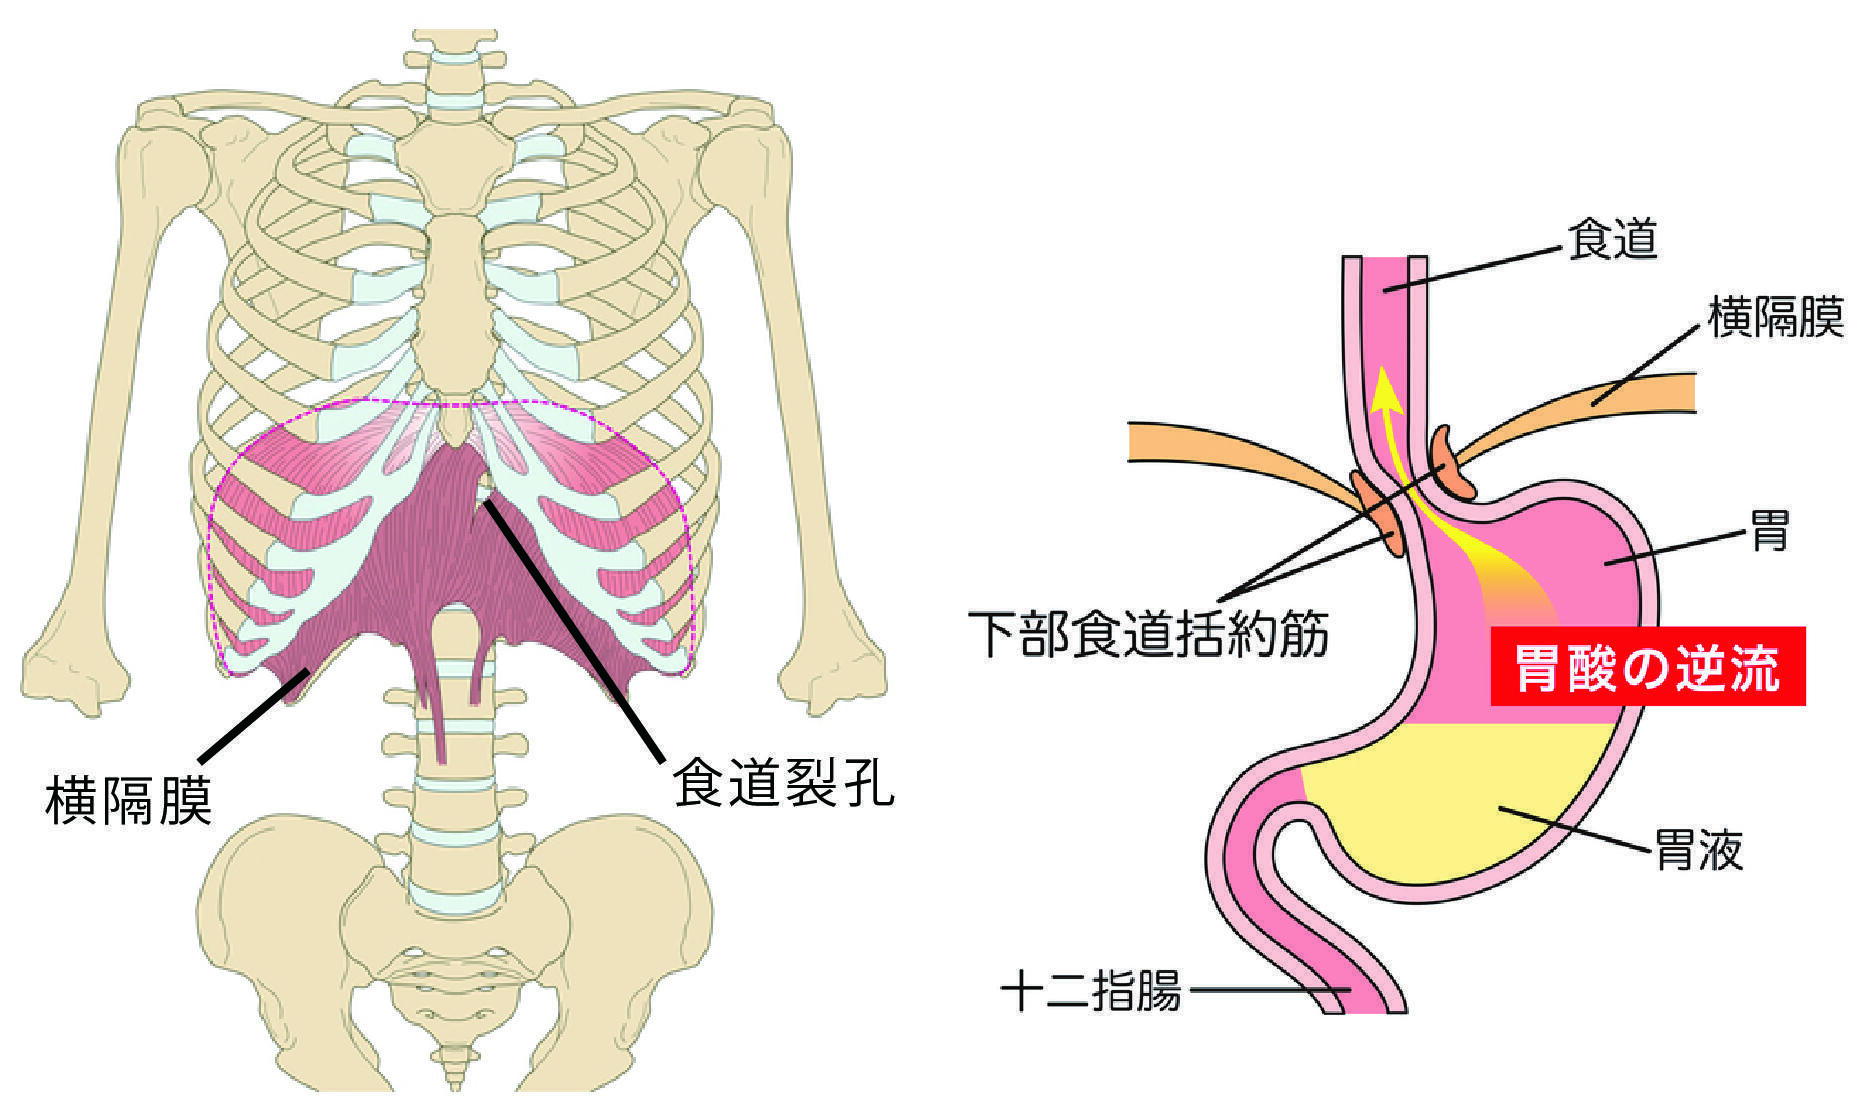 大 横隔膜と胃と内臓.jpg